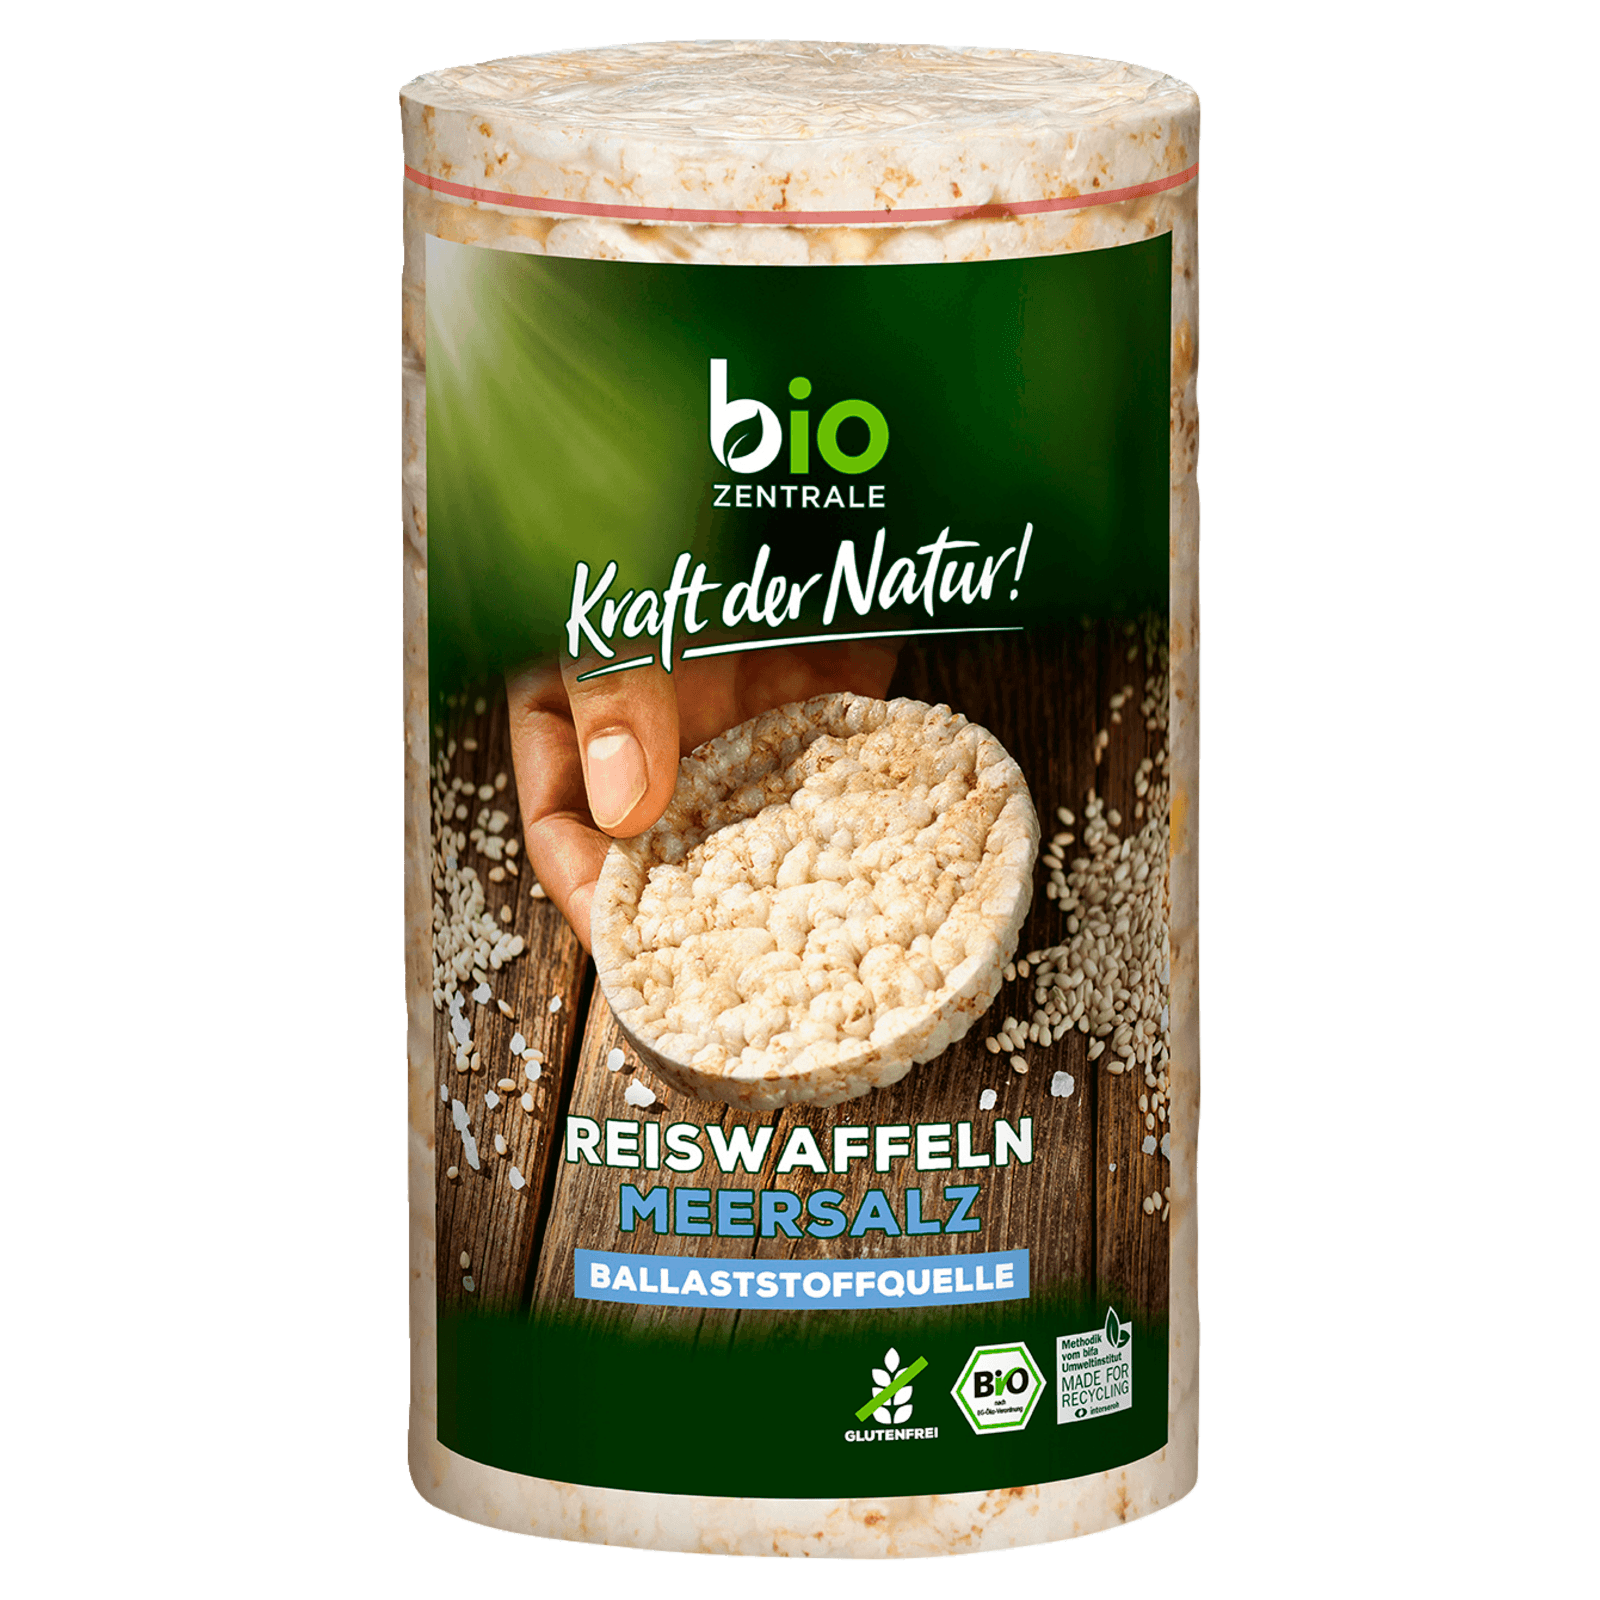 Biozentrale Bio Reiswaffeln Meersalz 100g  für 1.49 EUR